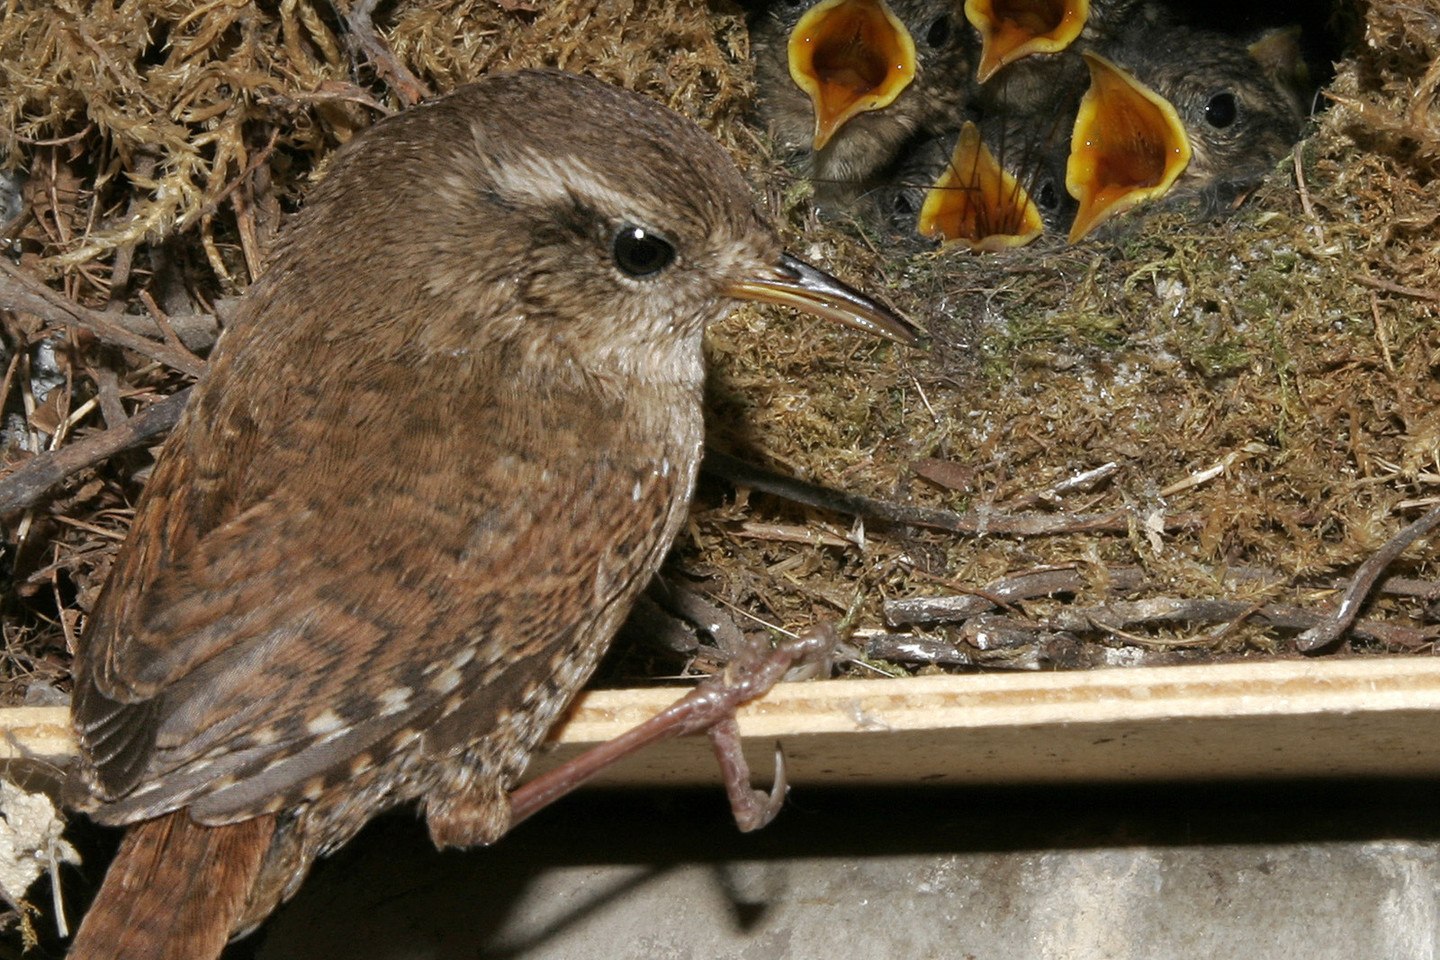 Фото птенцов соловья в гнезде